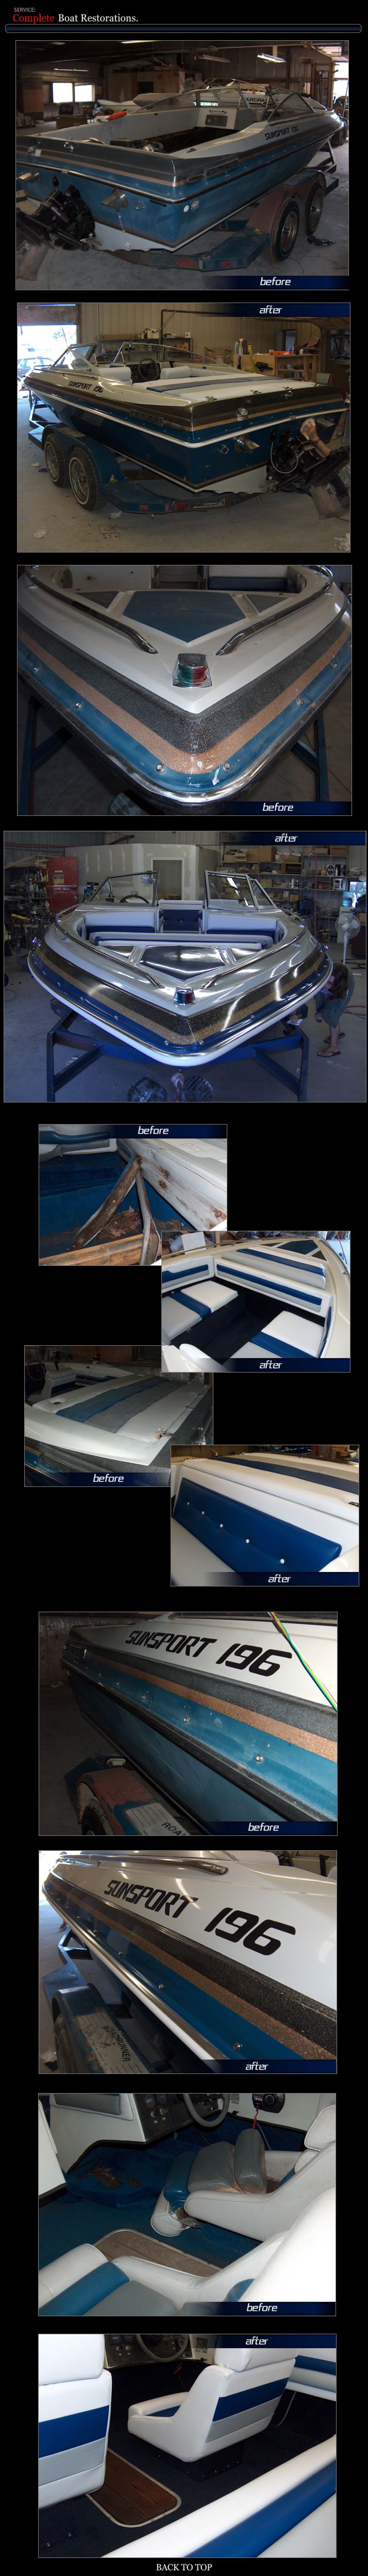 Baja boat restoration